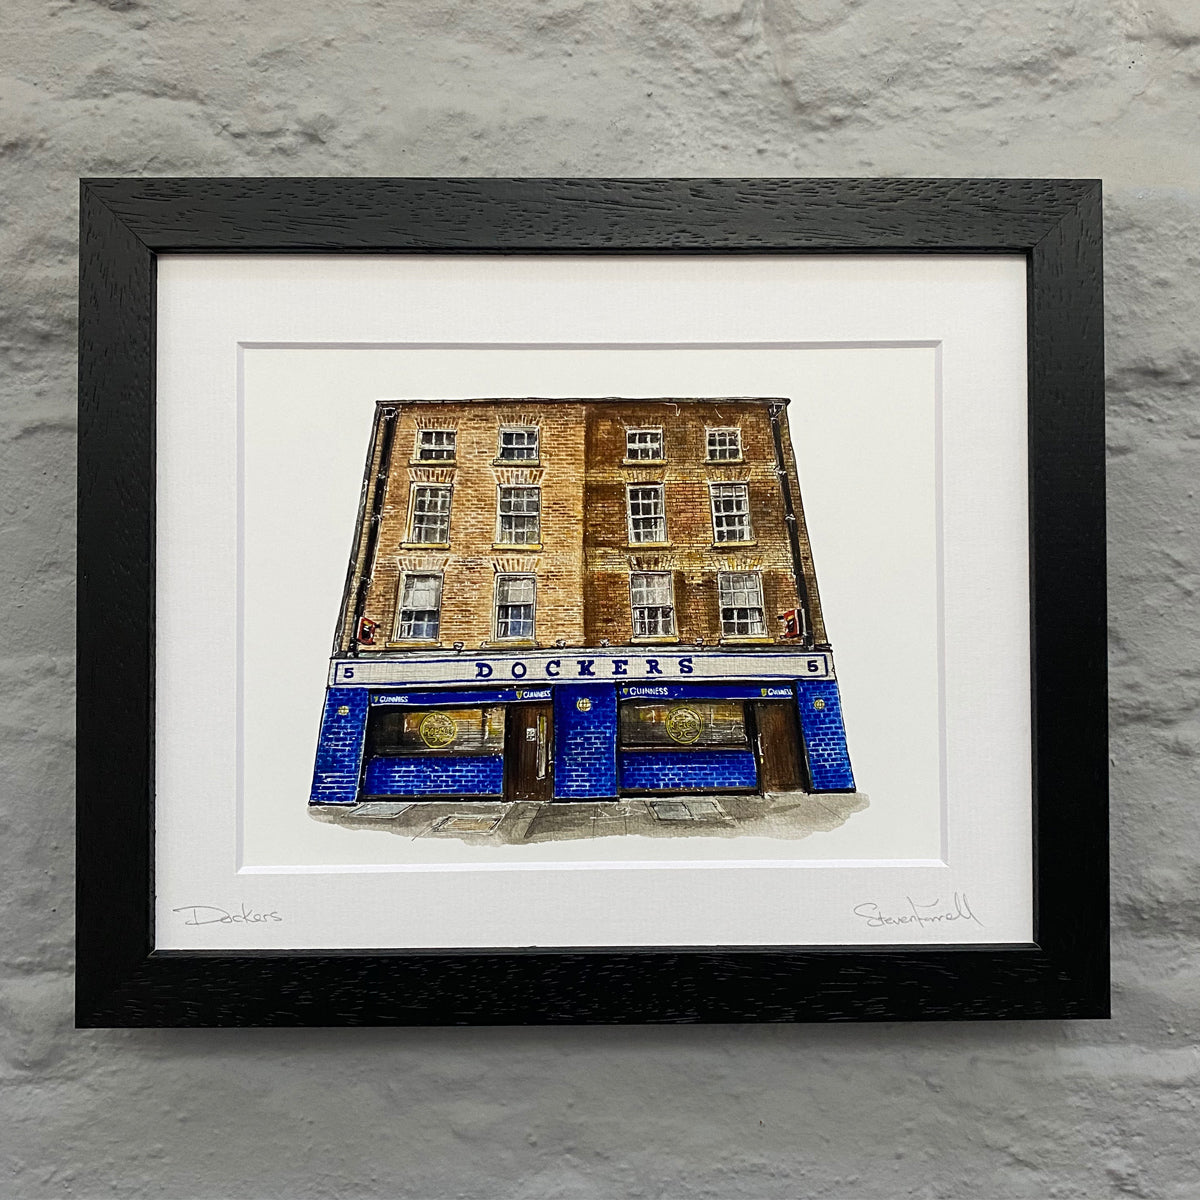 Dockers-pub-Dublin-Framed-print-black-frame